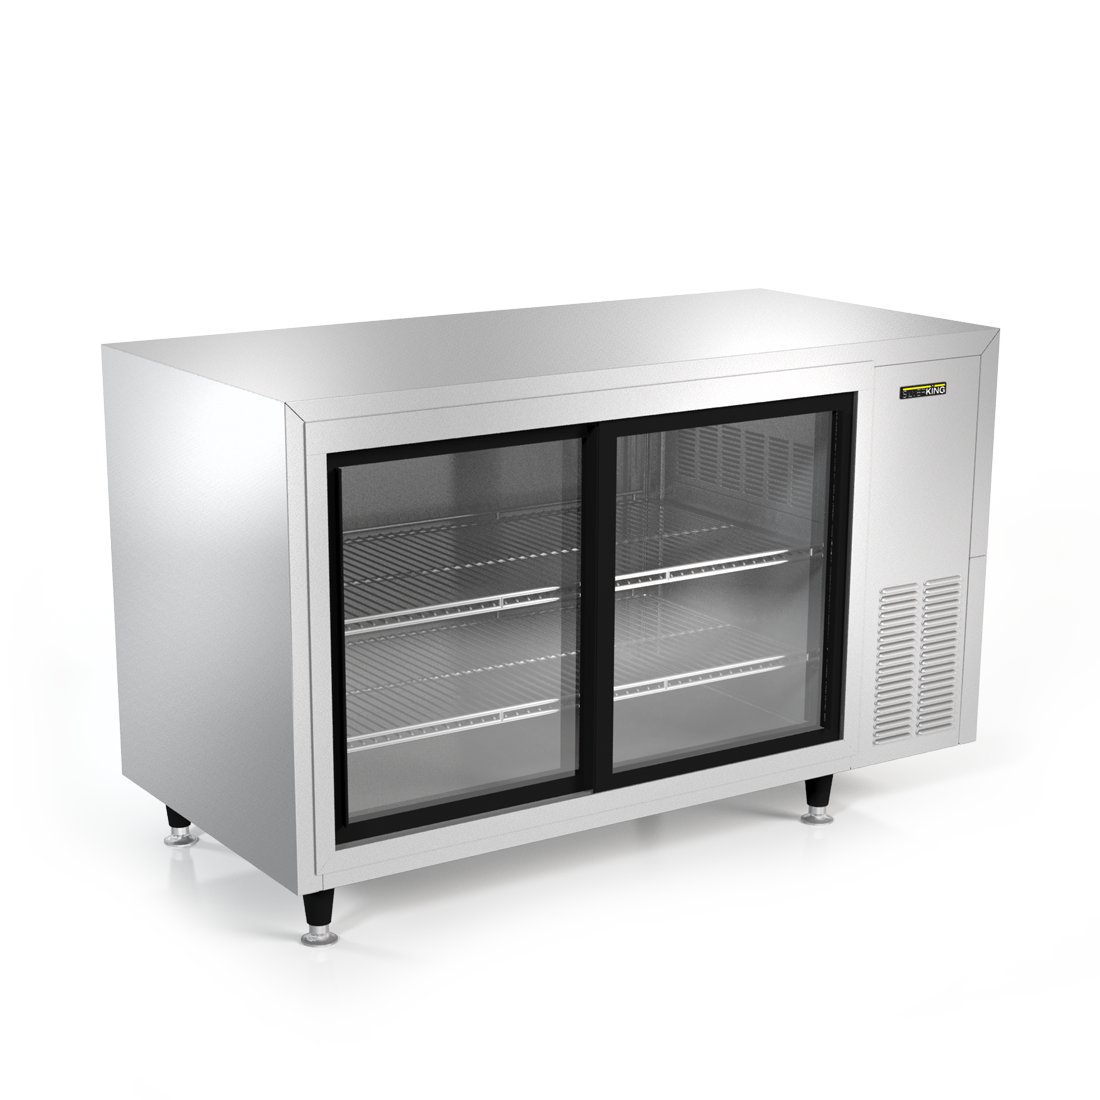 Silver King SKRM48-EGUS1 | 48" Wide 2 Glass Door Merchandiser Refrigerator